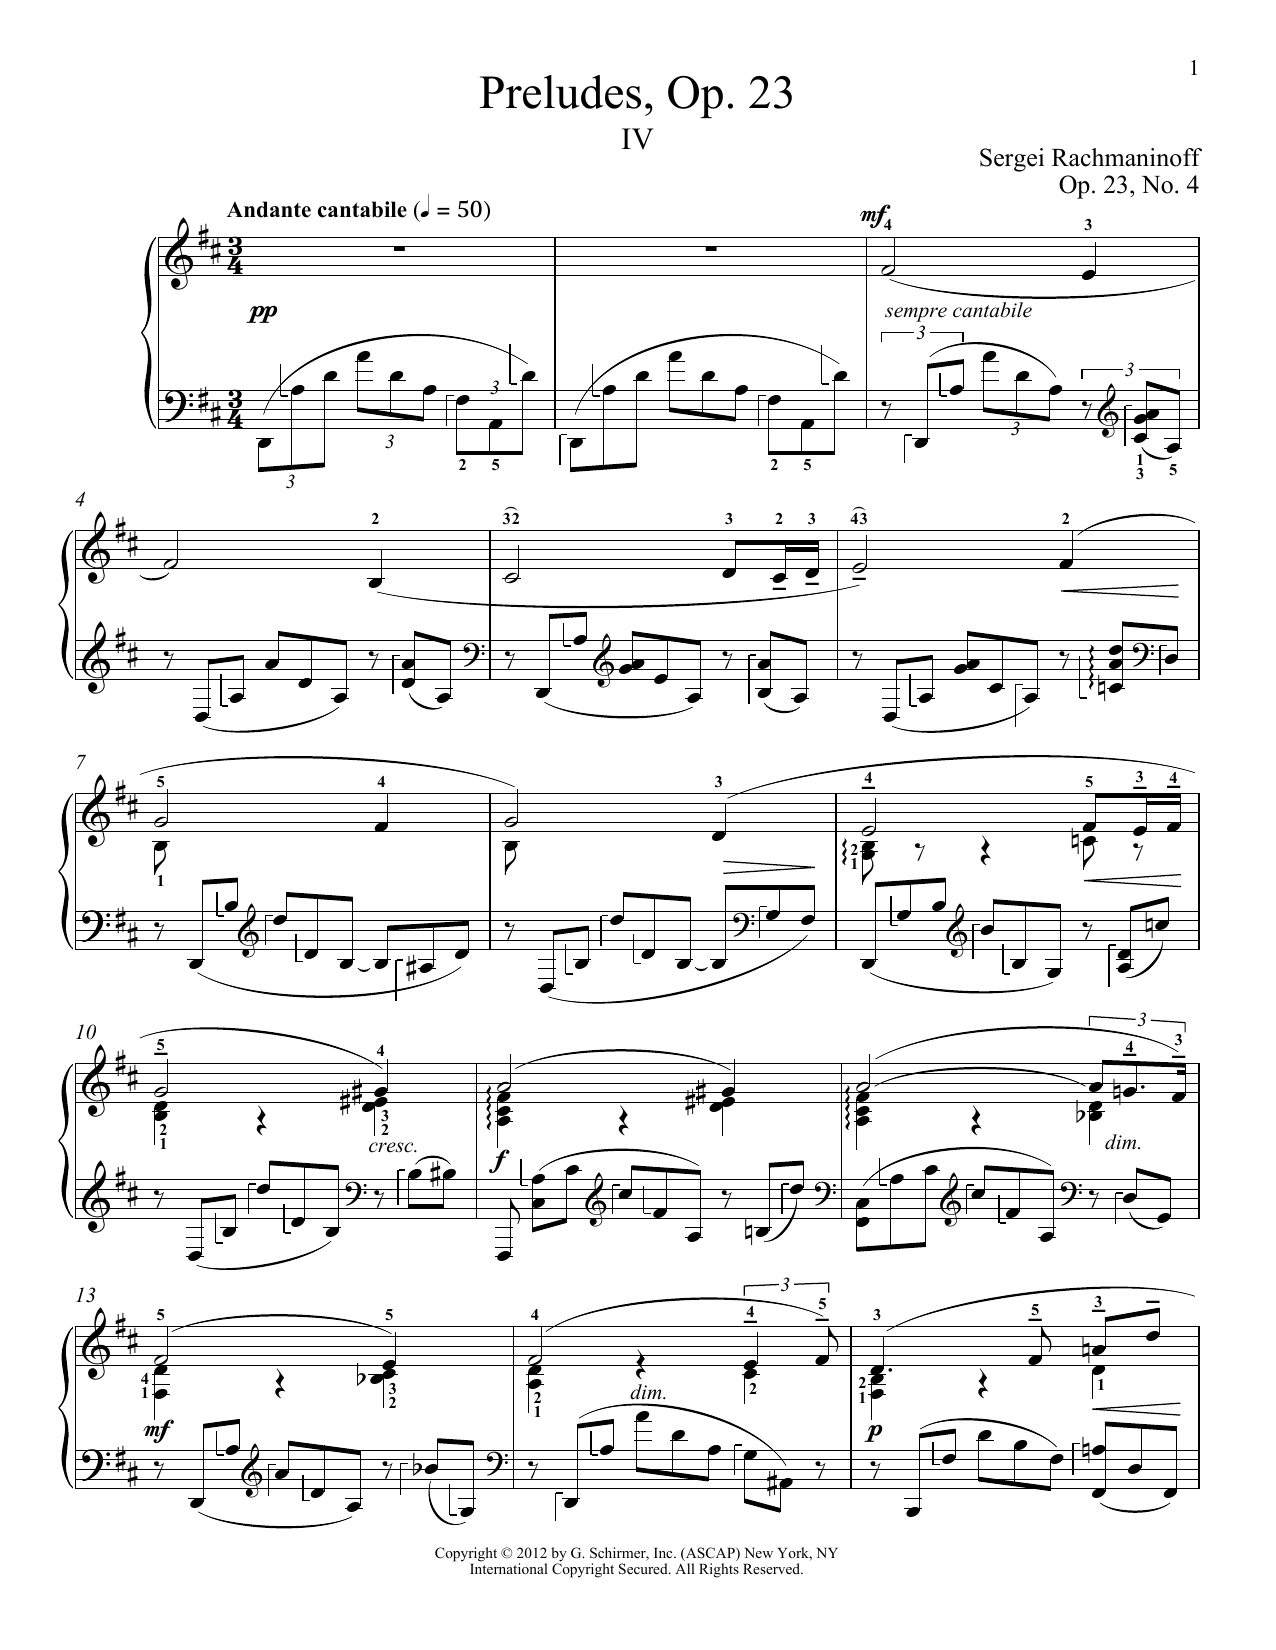 Download Sergei Rachmaninoff Prelude In D Major, Op. 23, No. 4 Sheet Music